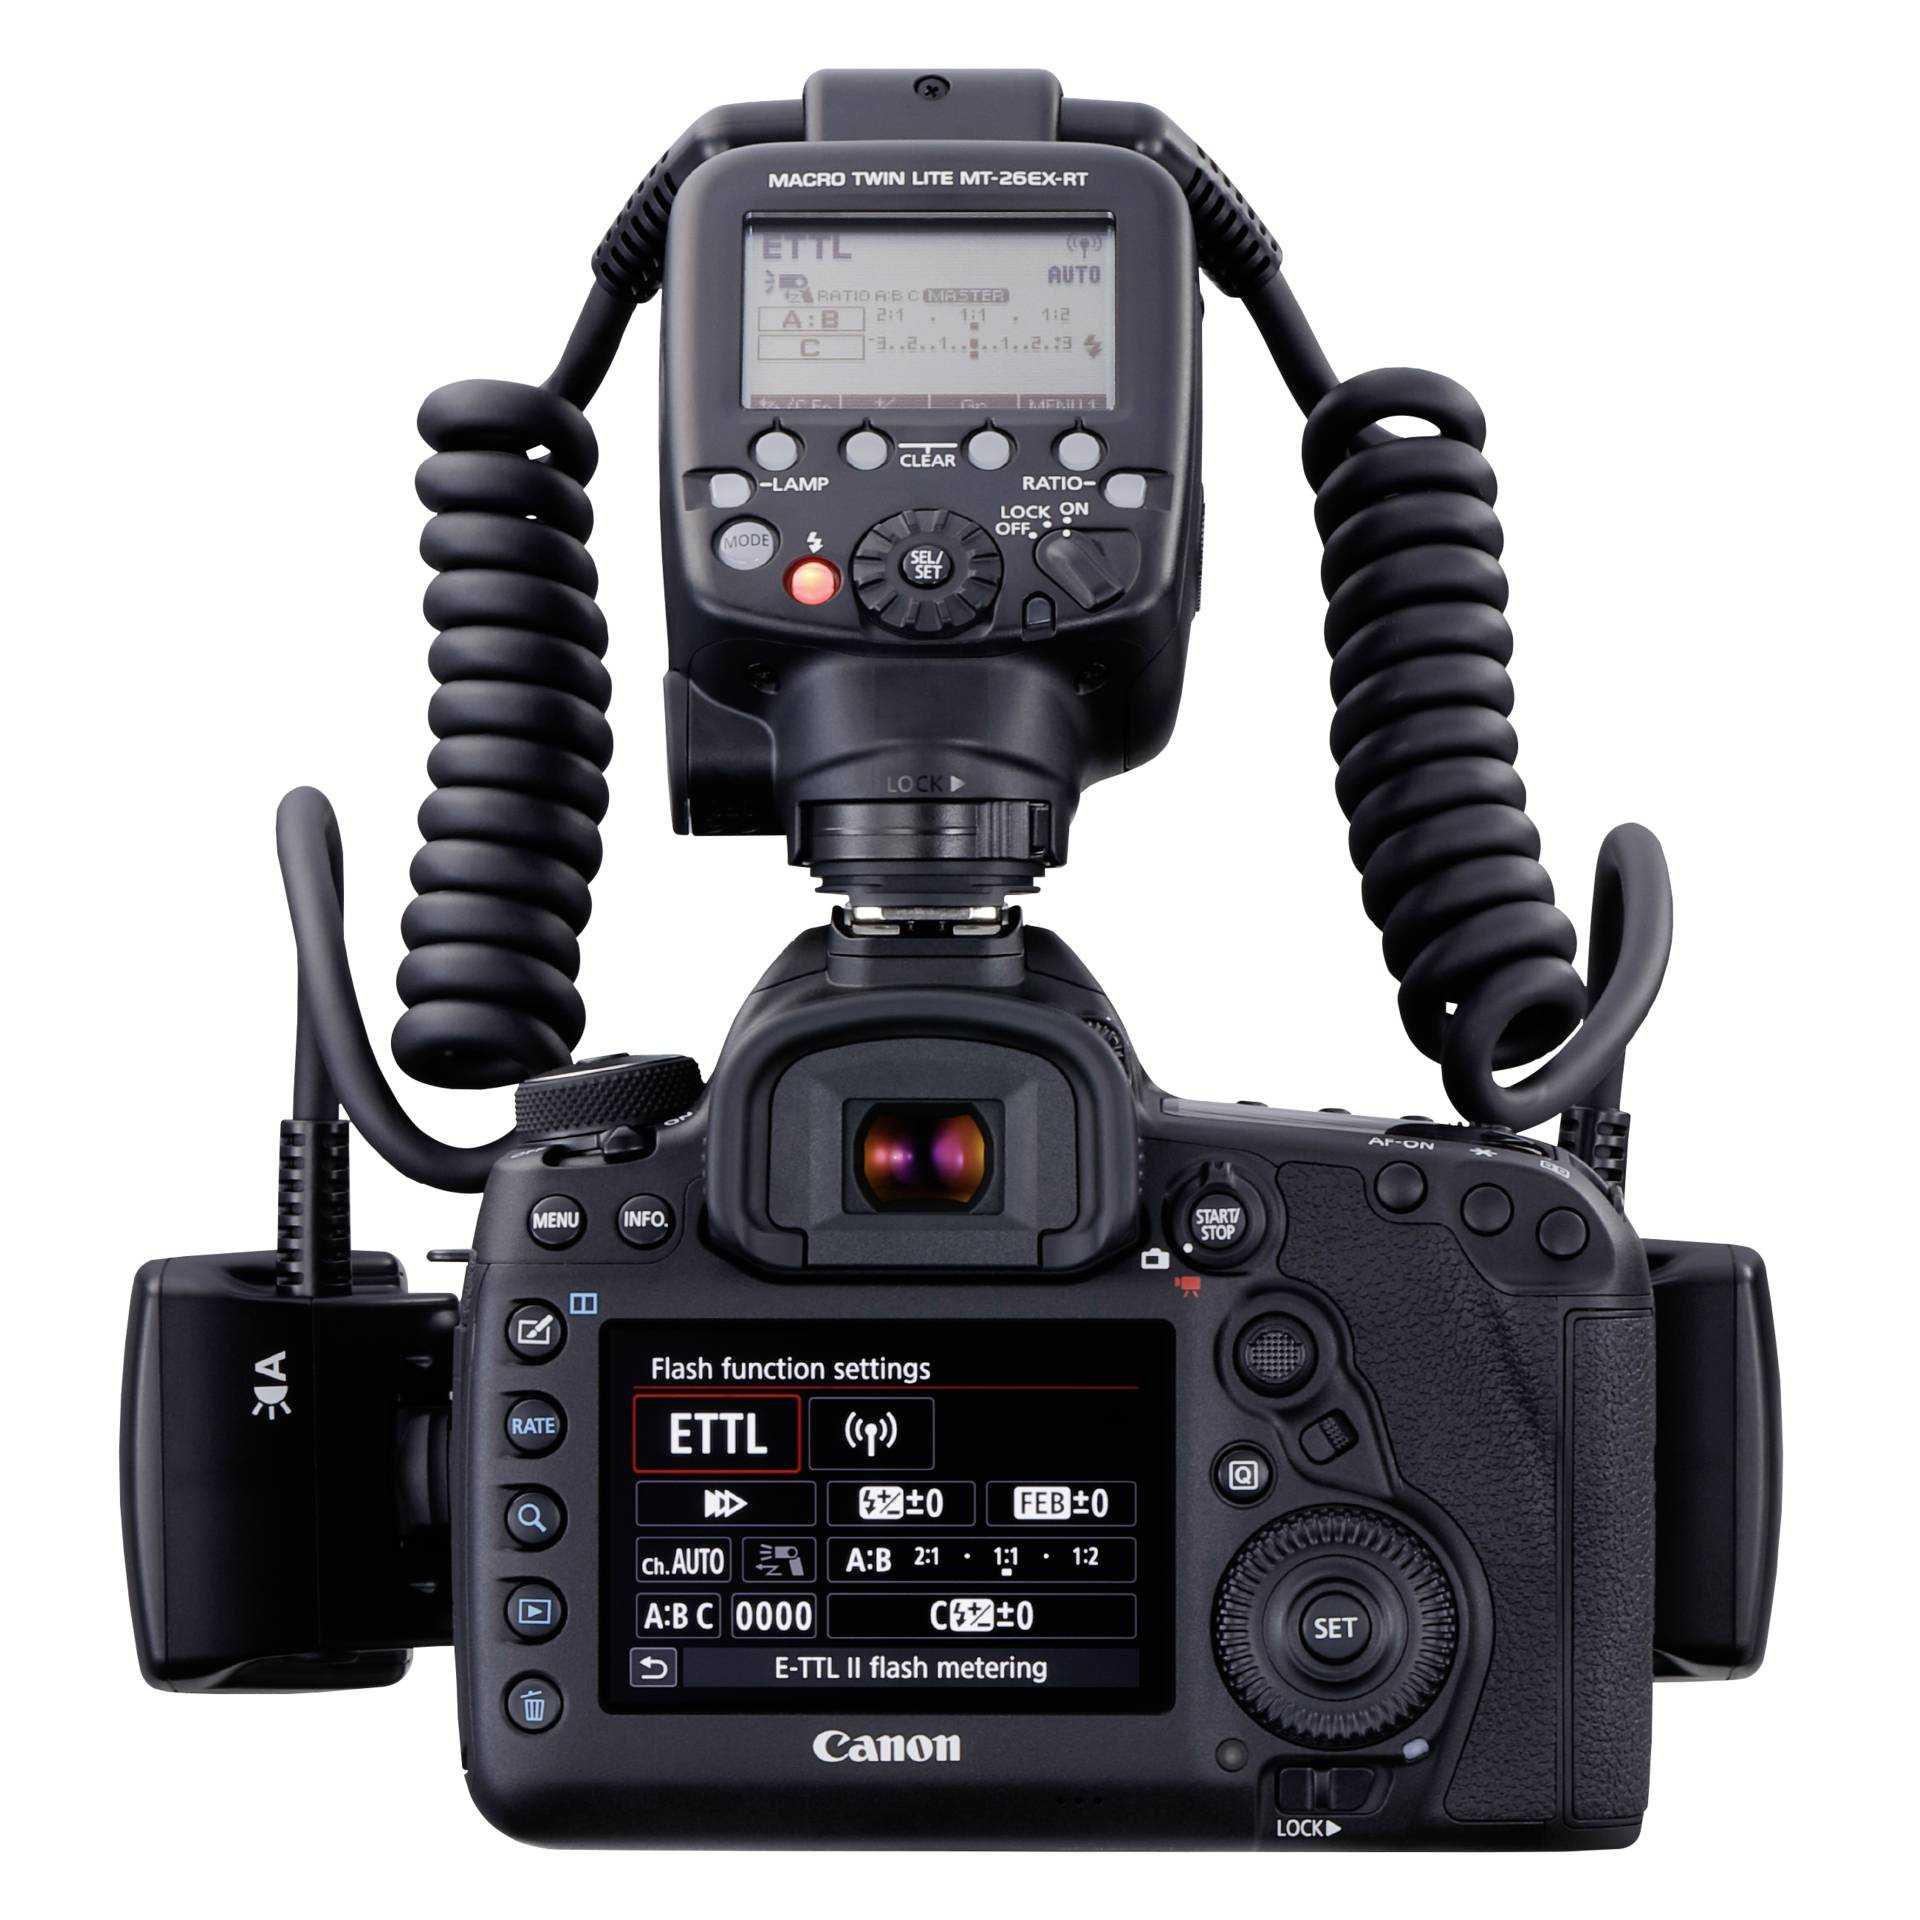 Canon macro twin lite mt-24 ex купить по акционной цене , отзывы и обзоры.